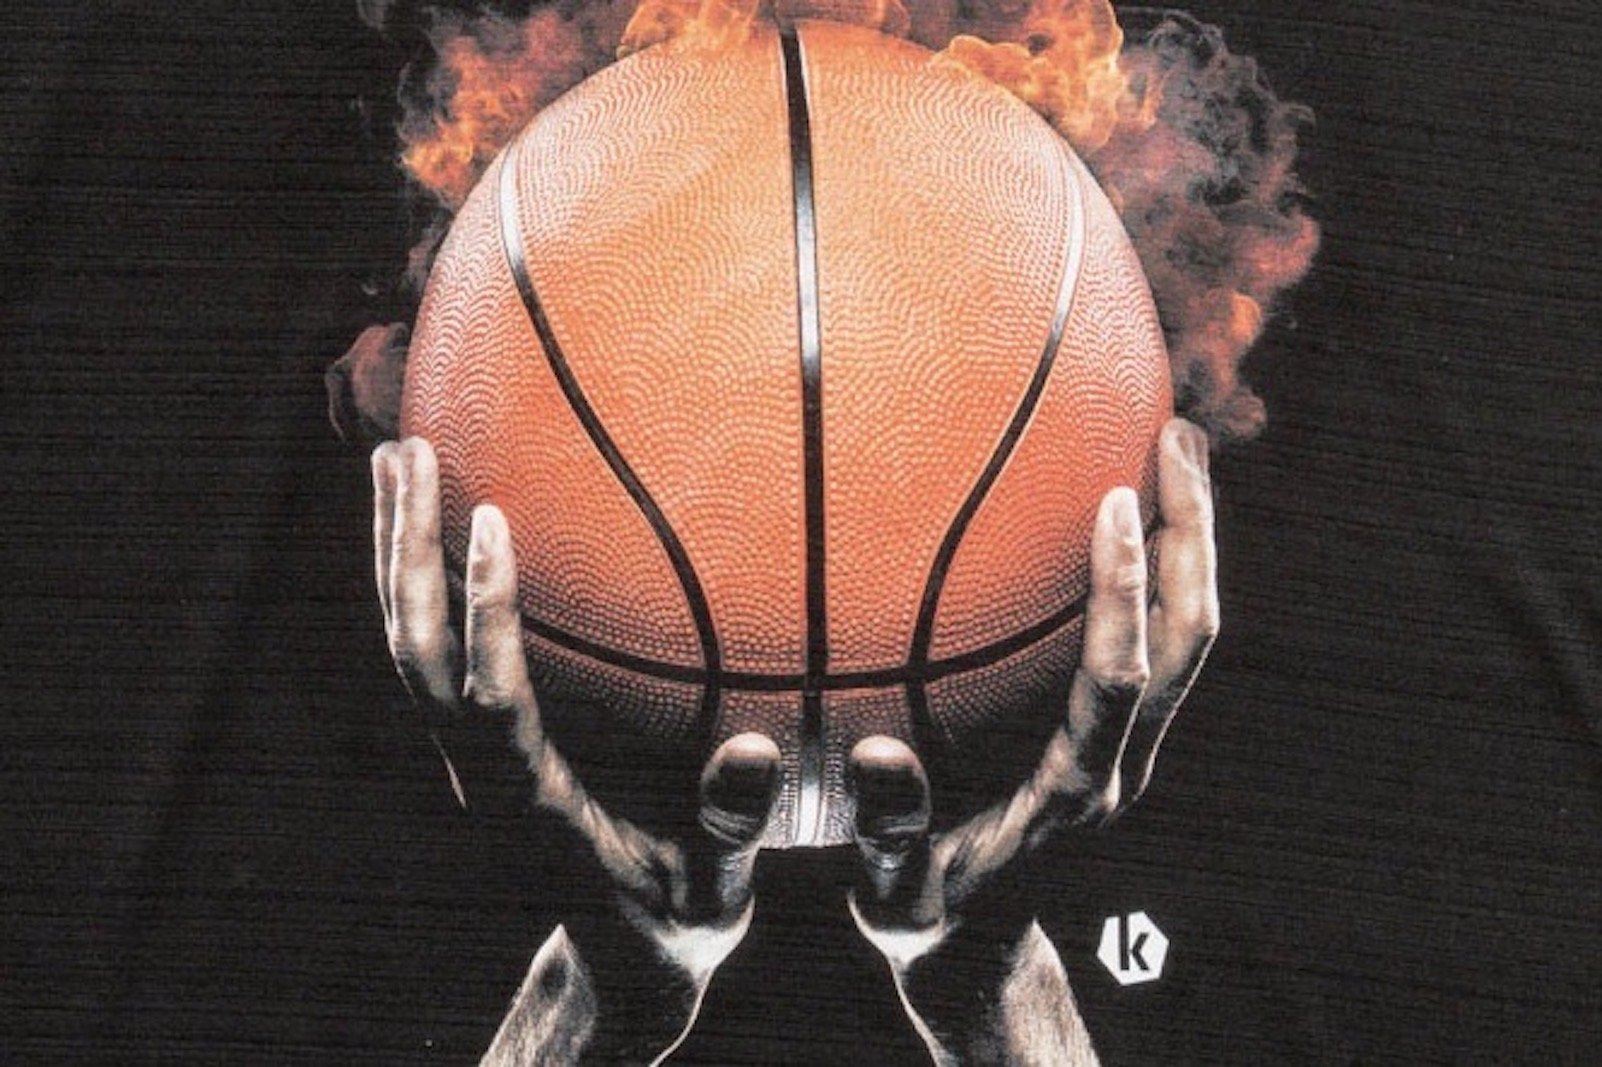 バスケットボールの表面の凹凸を再現したTシャツ